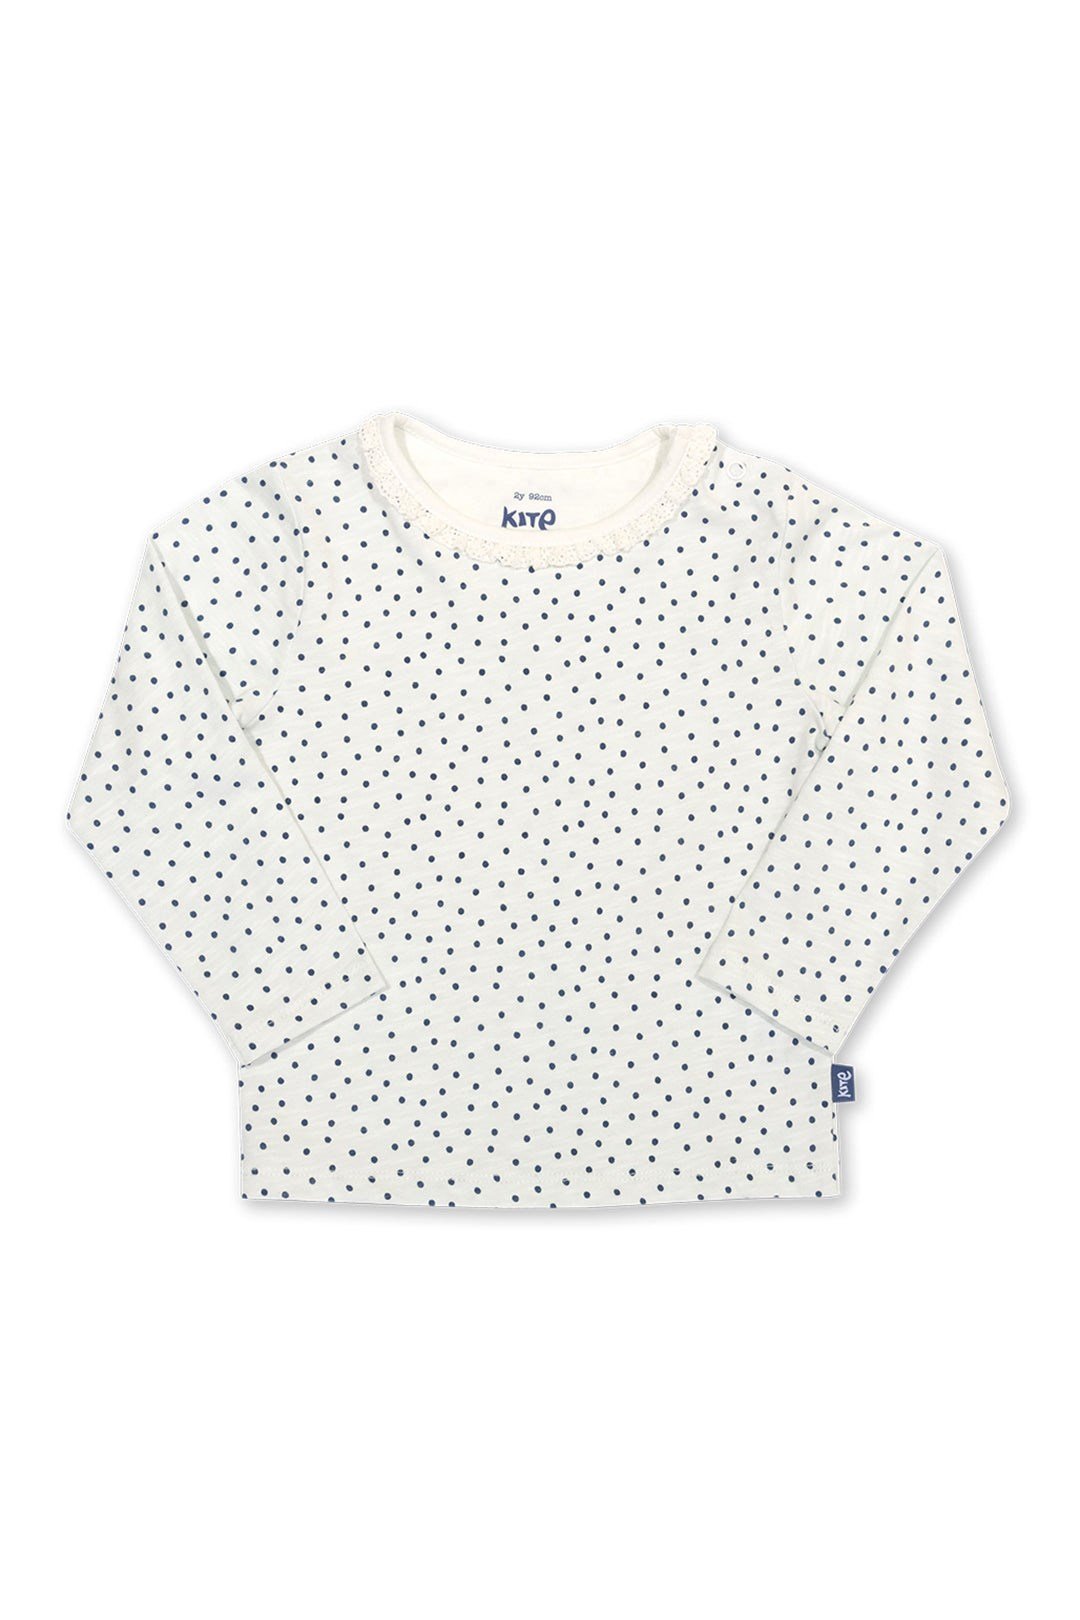 Little Dot Baby/Kids Organic Cotton T-Shirt -